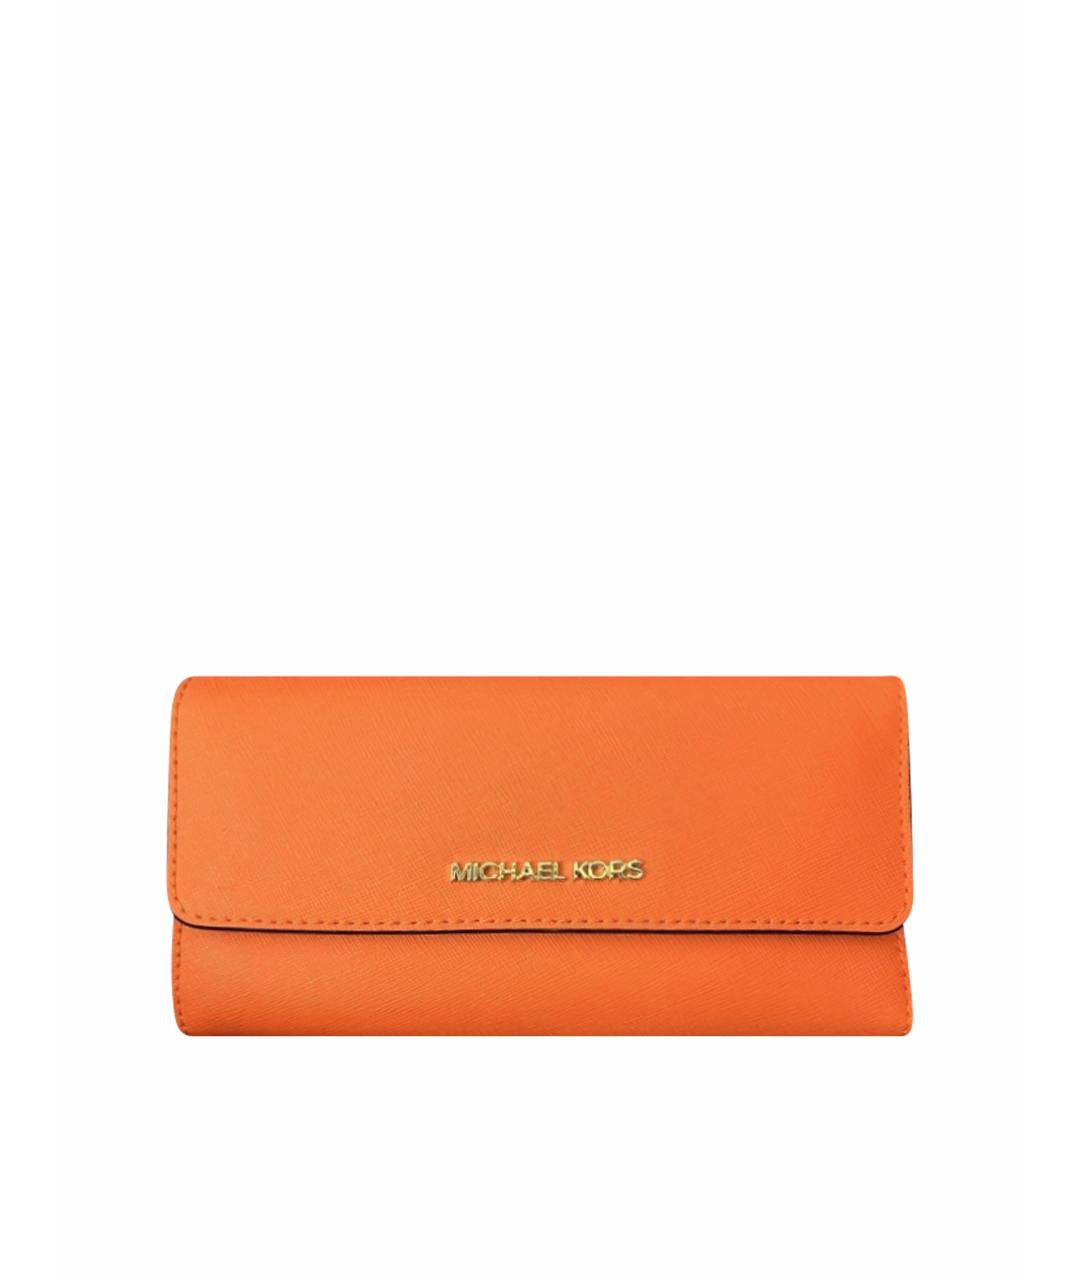 MICHAEL KORS Оранжевый кожаный кошелек, фото 1